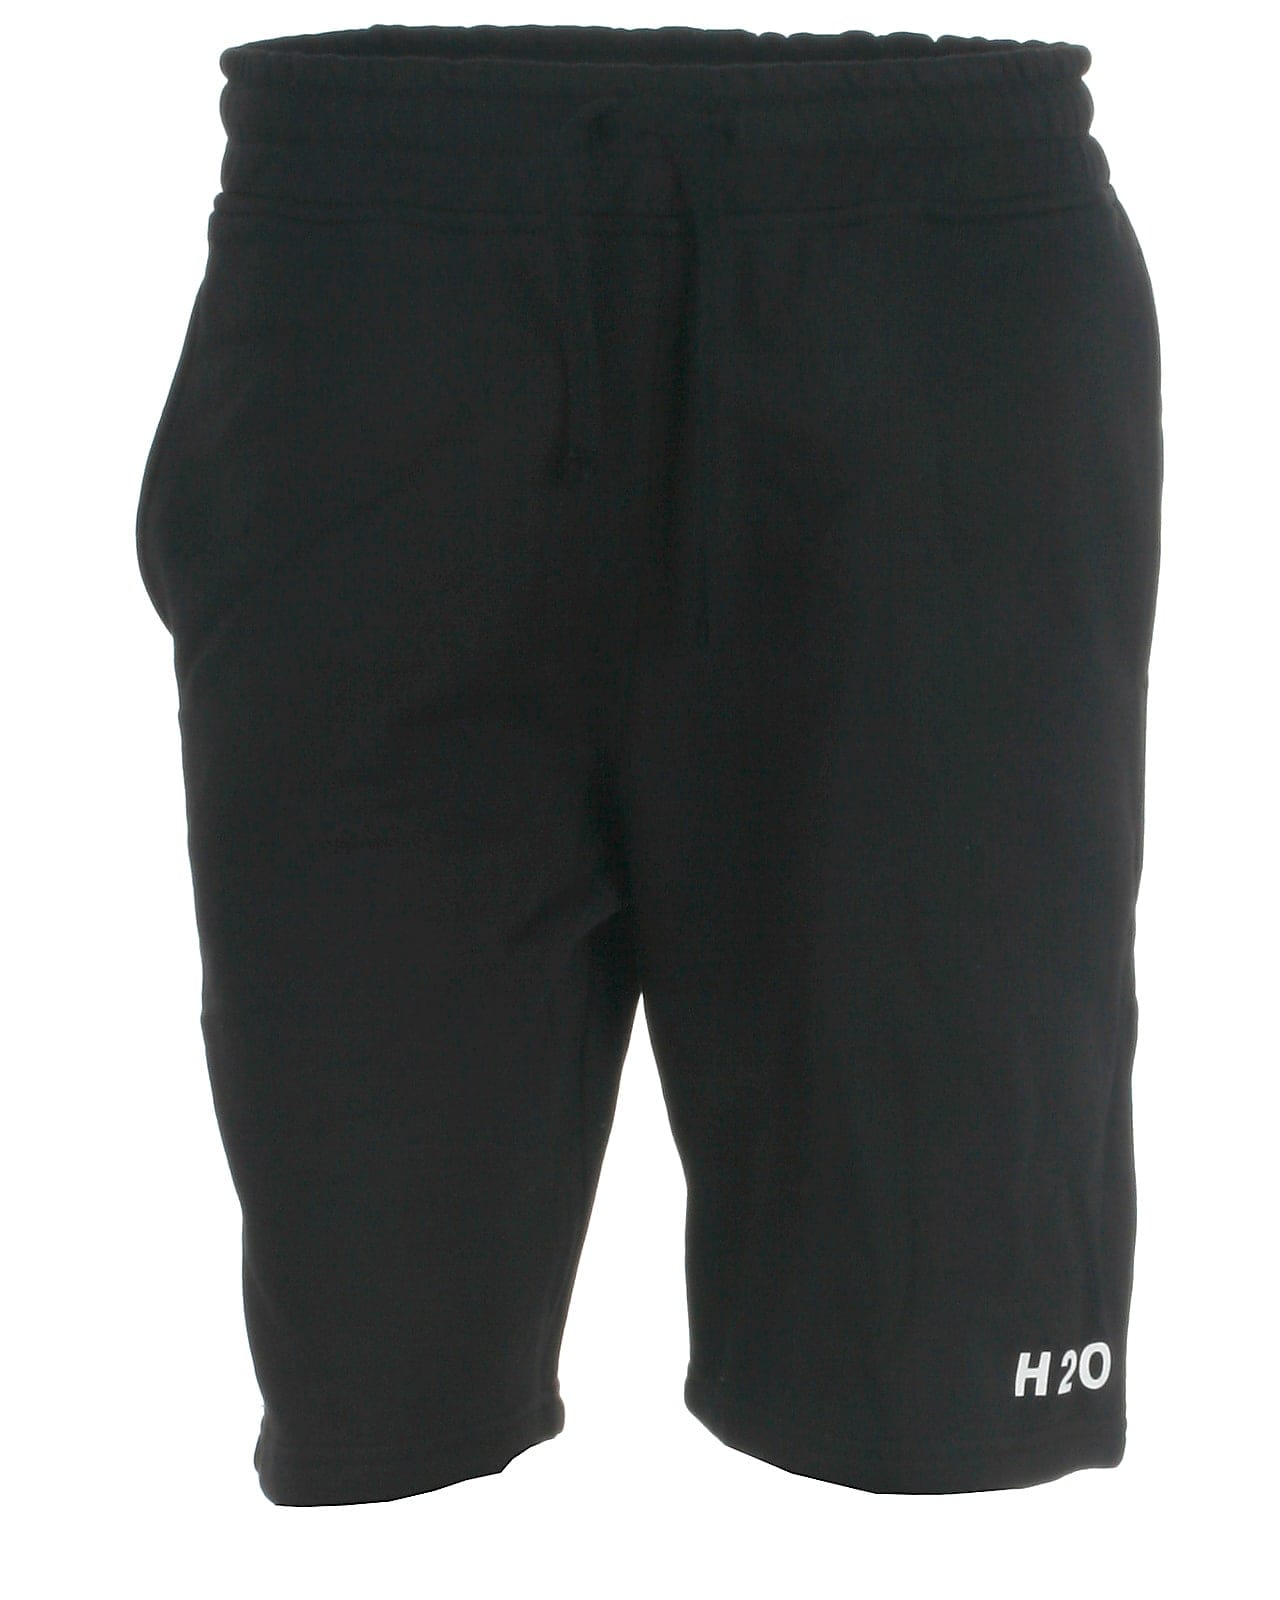 H2O sweat shorts